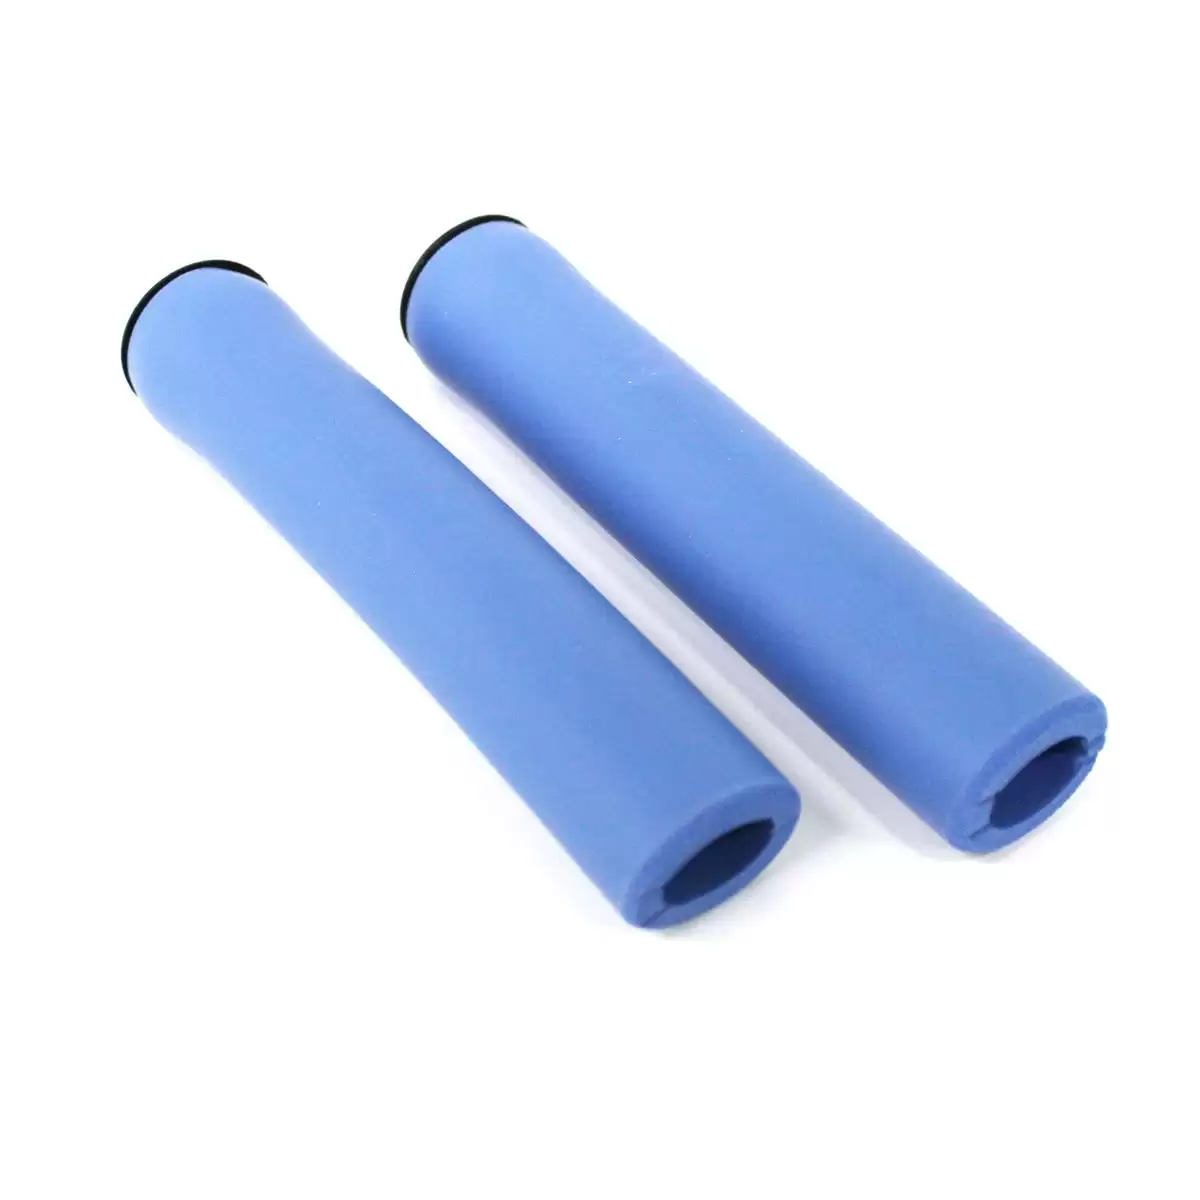 Coppia manopole Super Grip HL-001 silicone blu 130mm - image